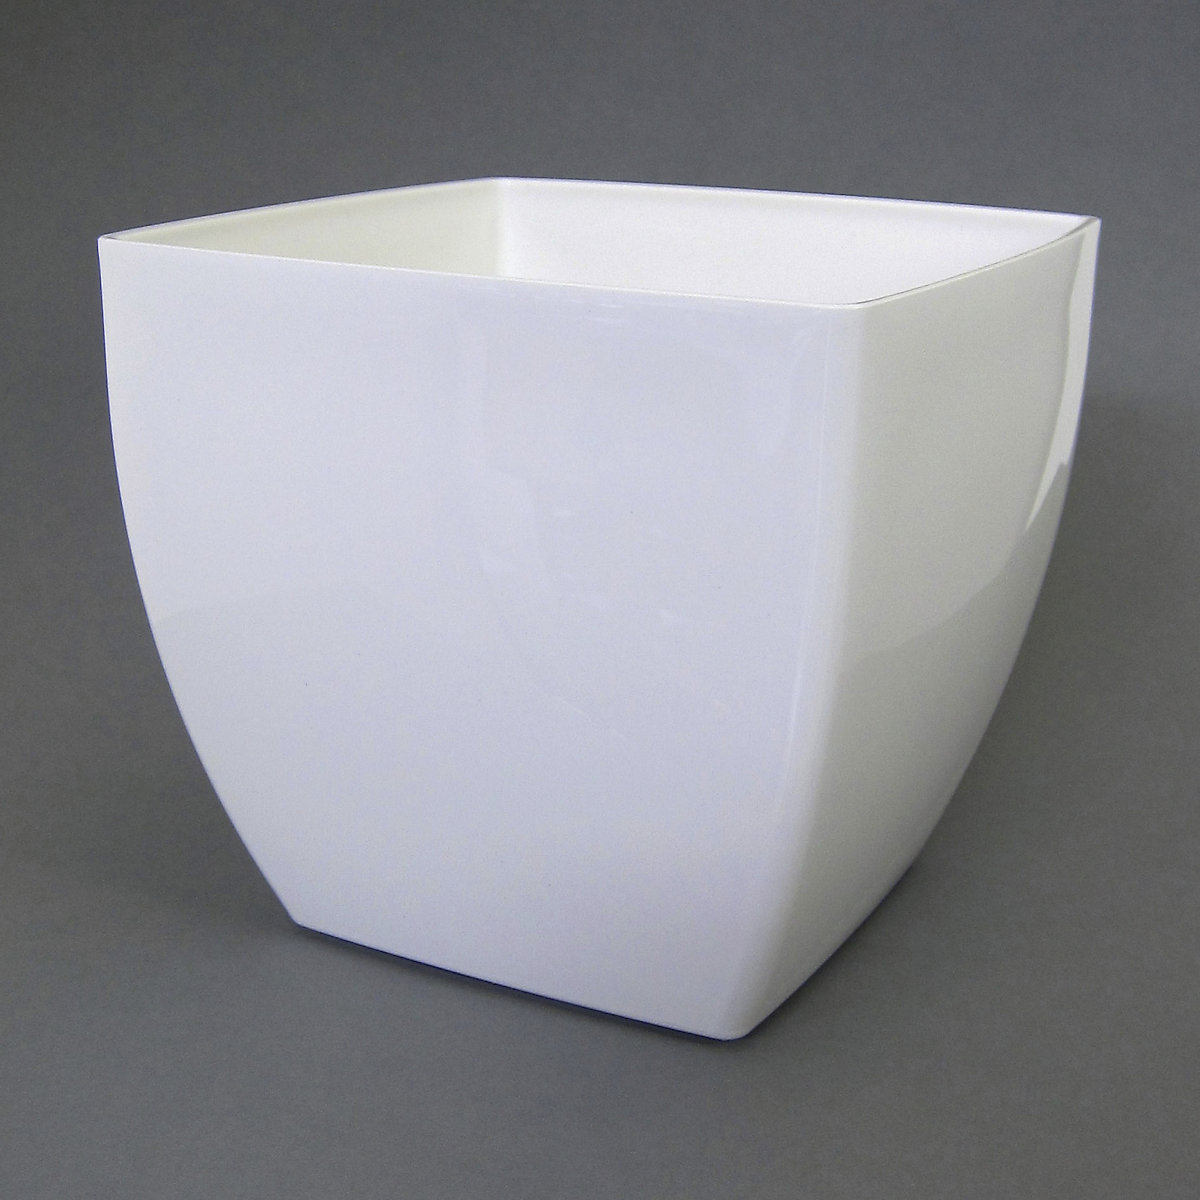 Vase SIENA konisch, 41,5 l, Höhe 360 mm, weiß-1